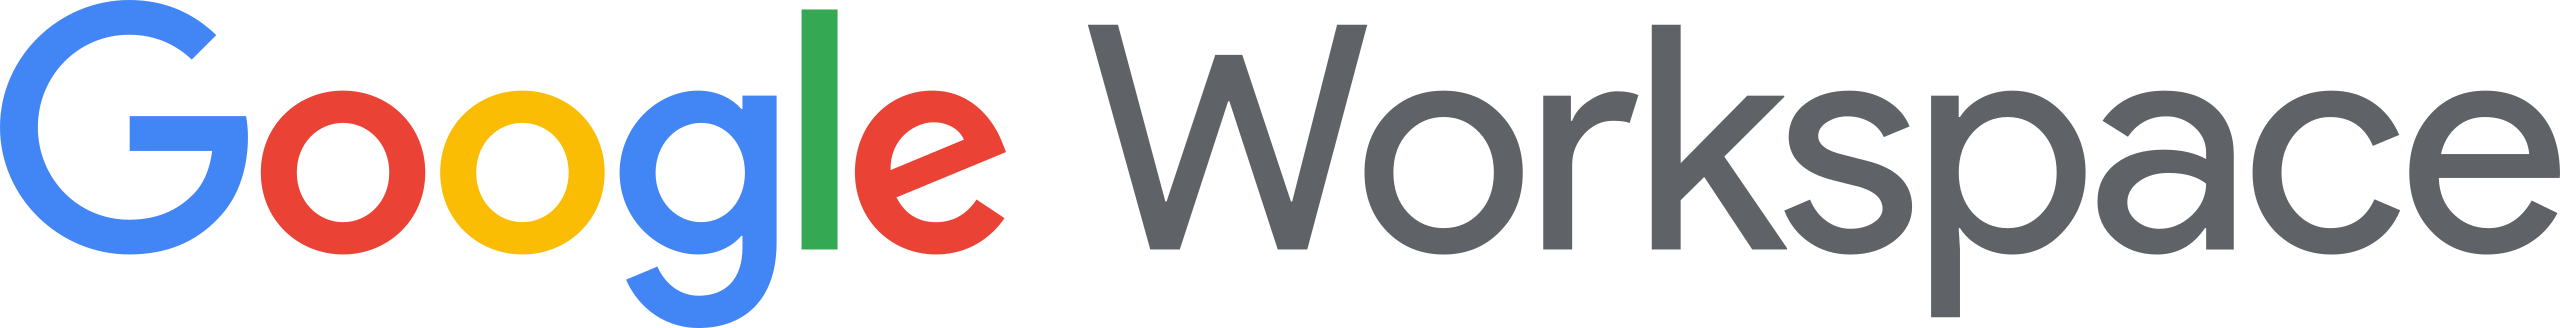 Google Workspace Logo.svg.png